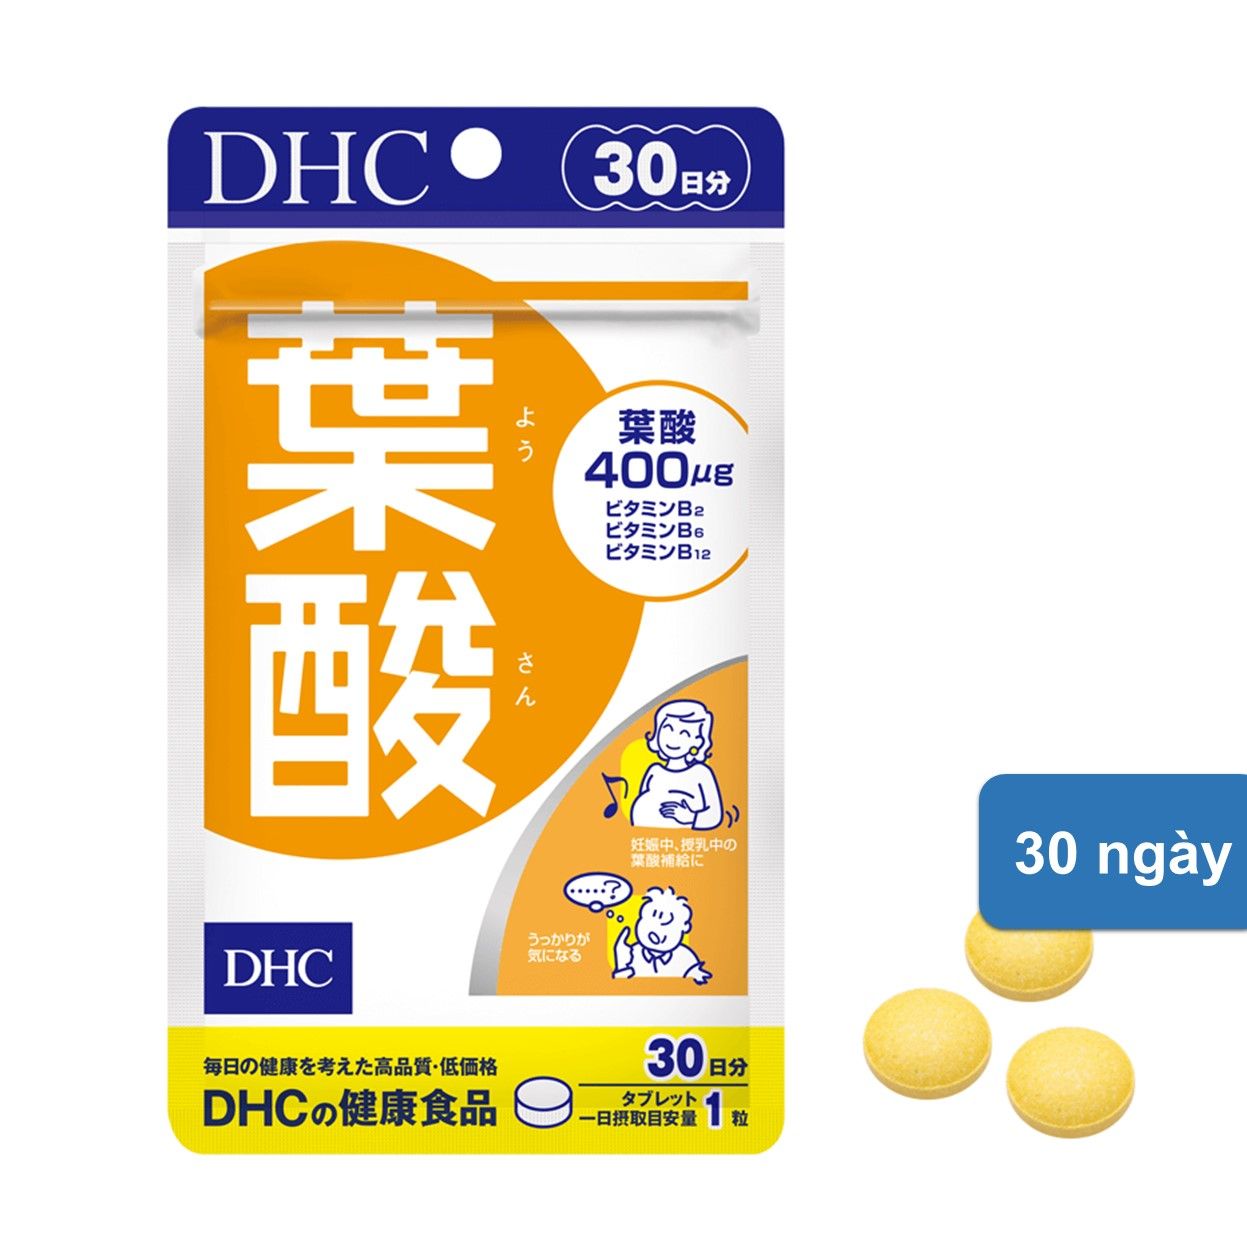  Viên Uống DHC Acid Folic 30 ngày 